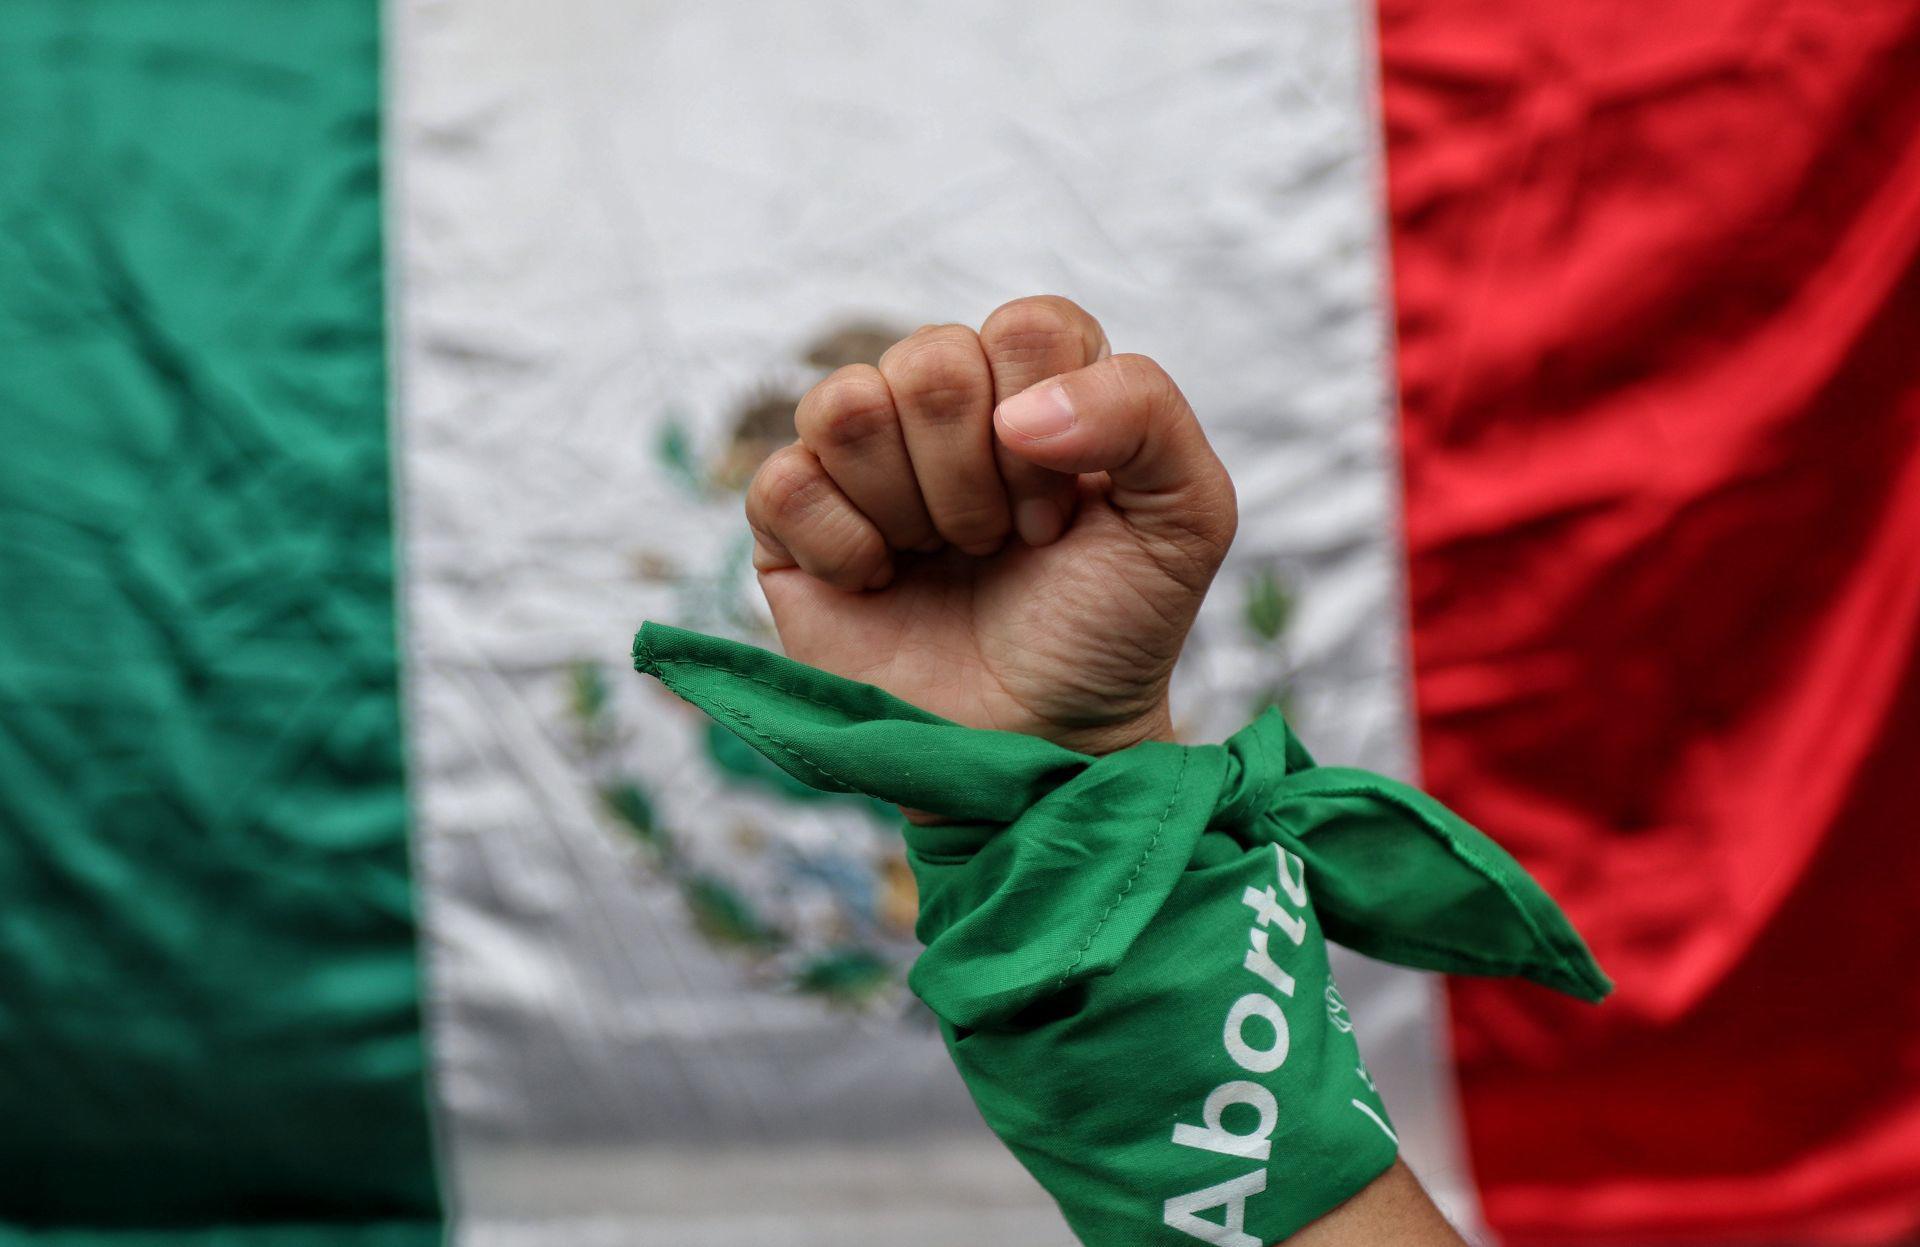 GIRE busca despenalizar aborto en 13 estados de México, tras resolución de SCJN. Noticias en tiempo real